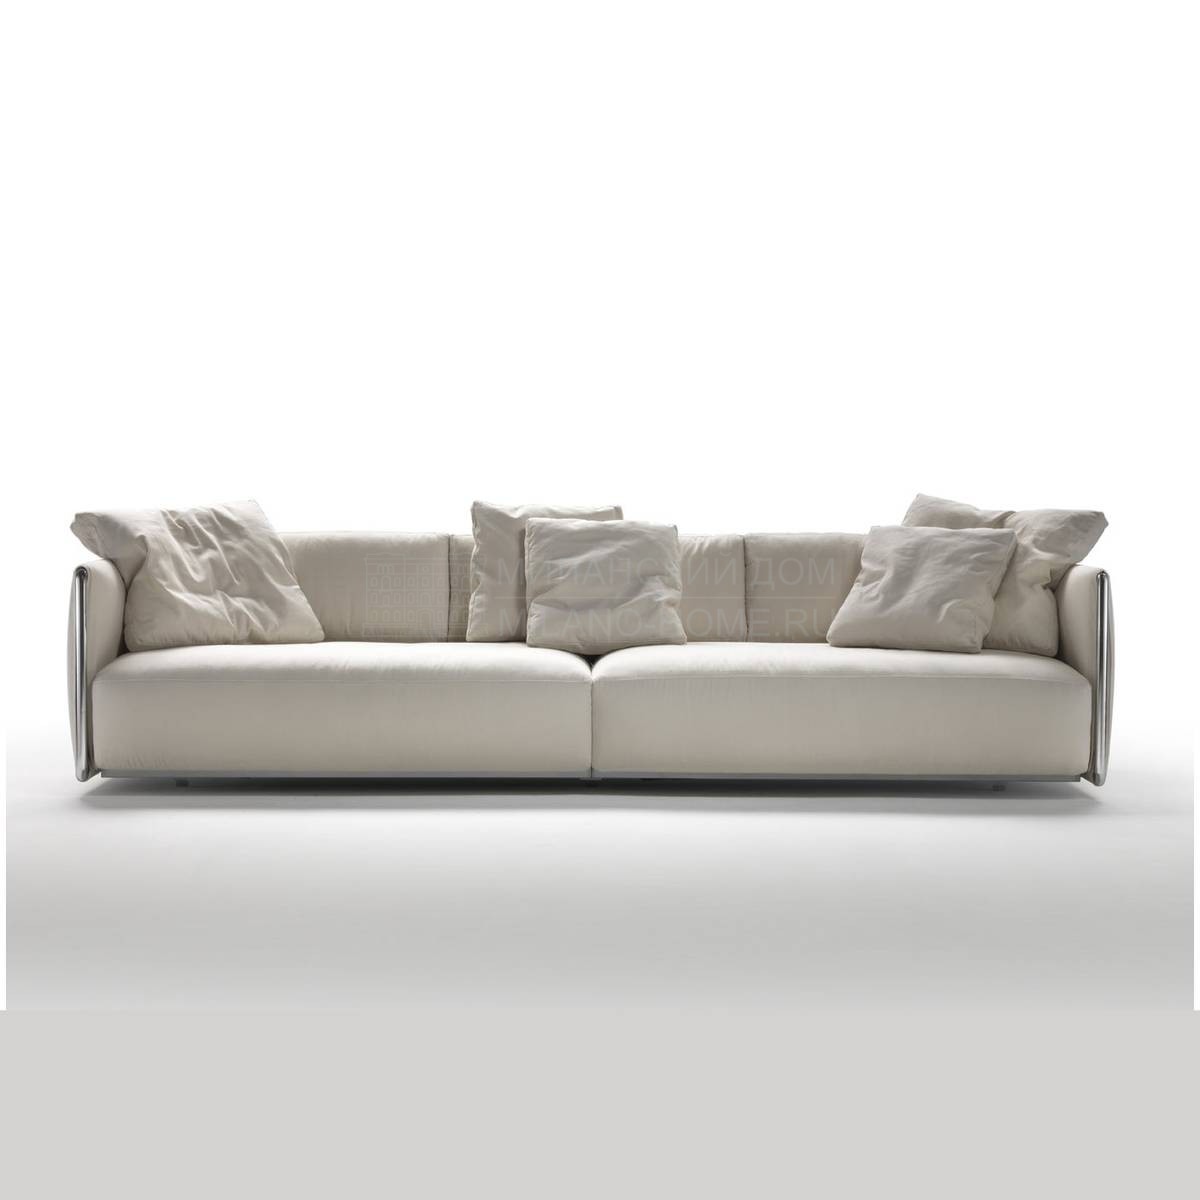 Прямой диван Edmond /sofa из Италии фабрики FLEXFORM